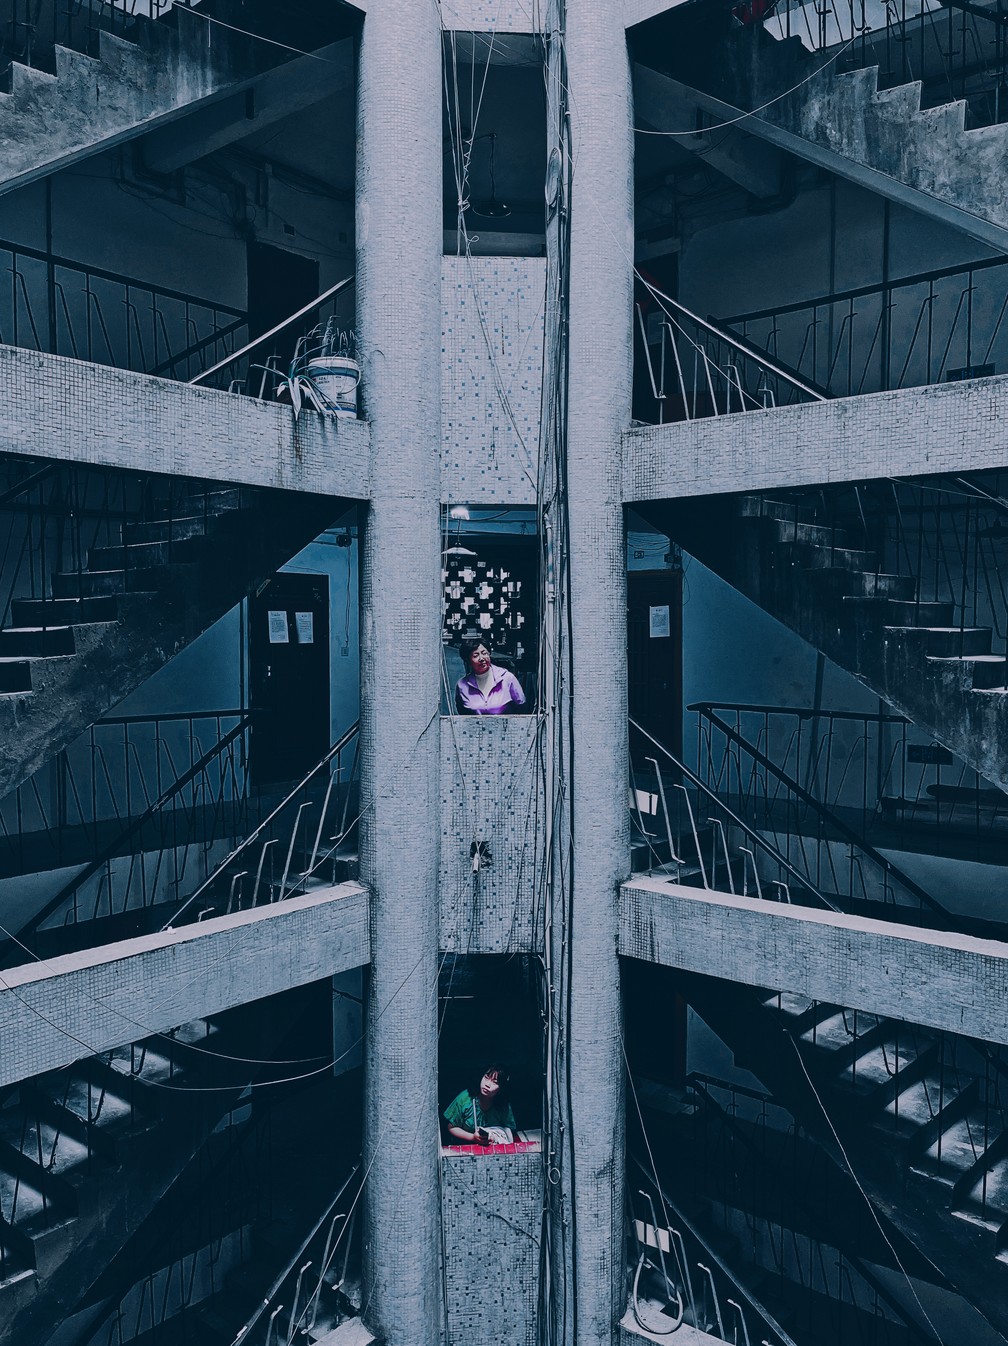 'A vida no edifício em forma de tubo', de Jinsong Hu, ficou com o 1º lugar na categoria 'Paisagem Urbana'. Foto tirada na China — Foto: Jinsong Hu/iPhone Photography Awards